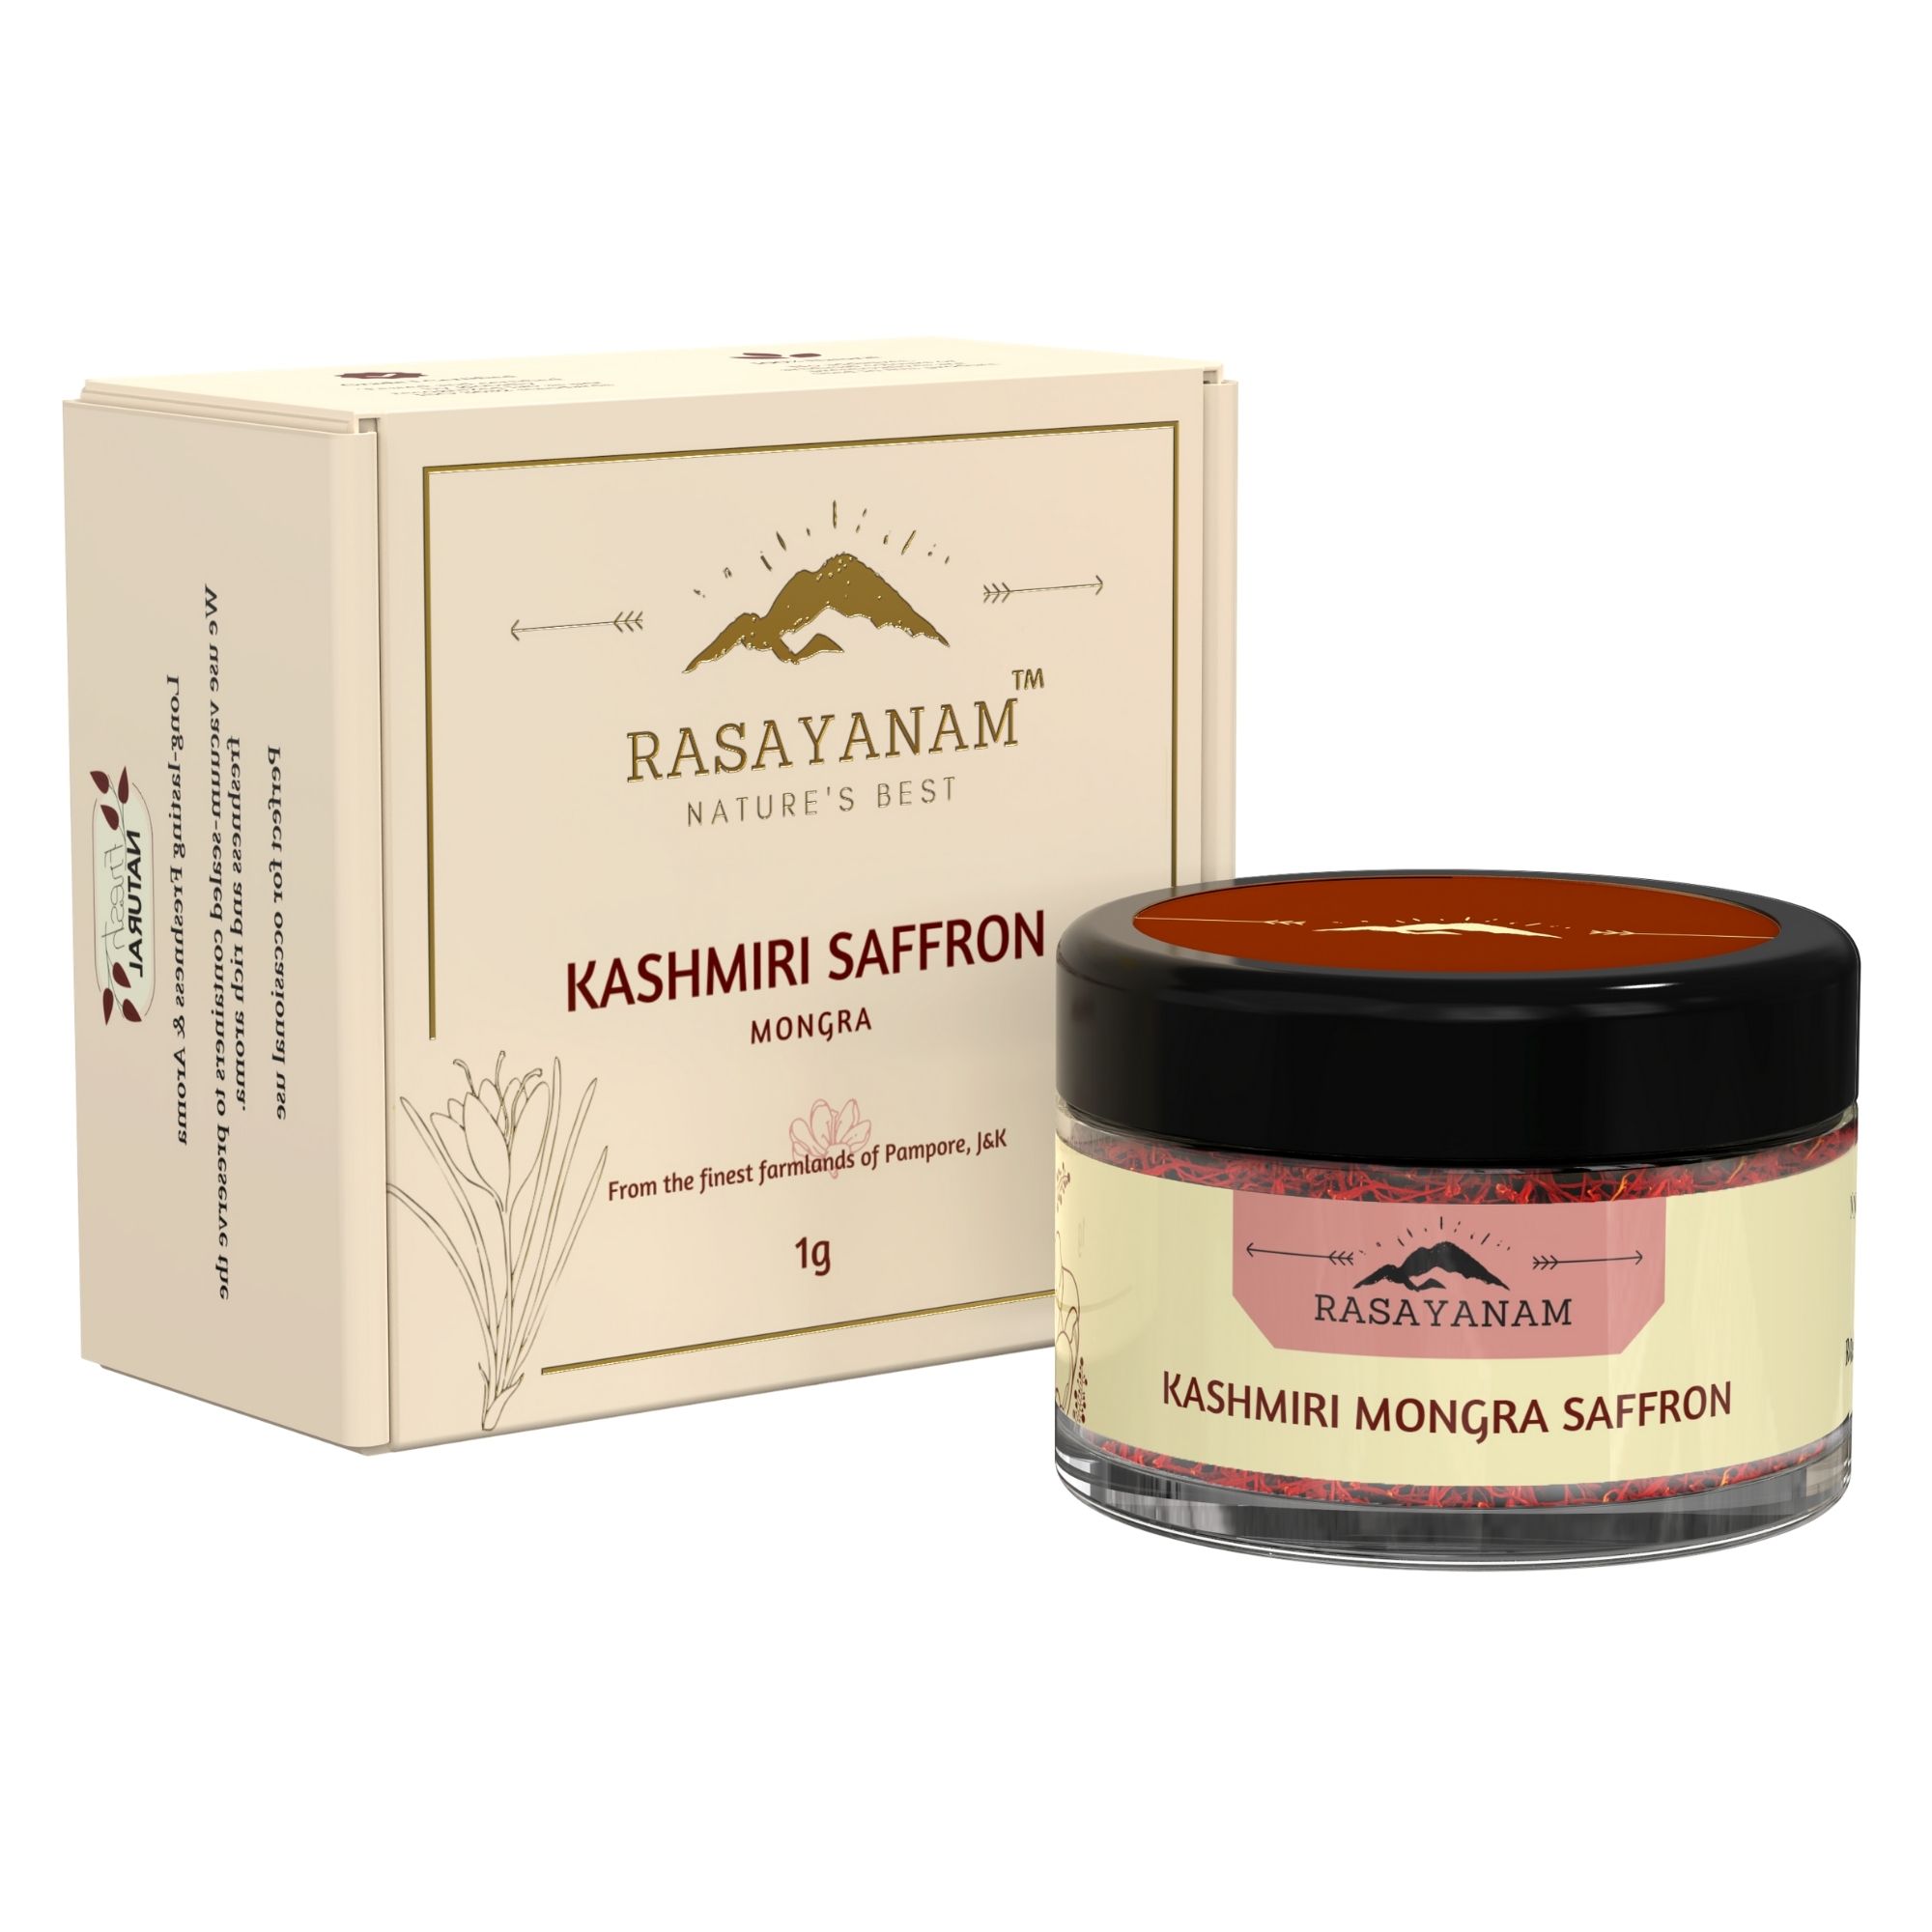 Buy Rasayanam Pure Kashmiri Mongra Saffron/ Kesar at Best Price Online